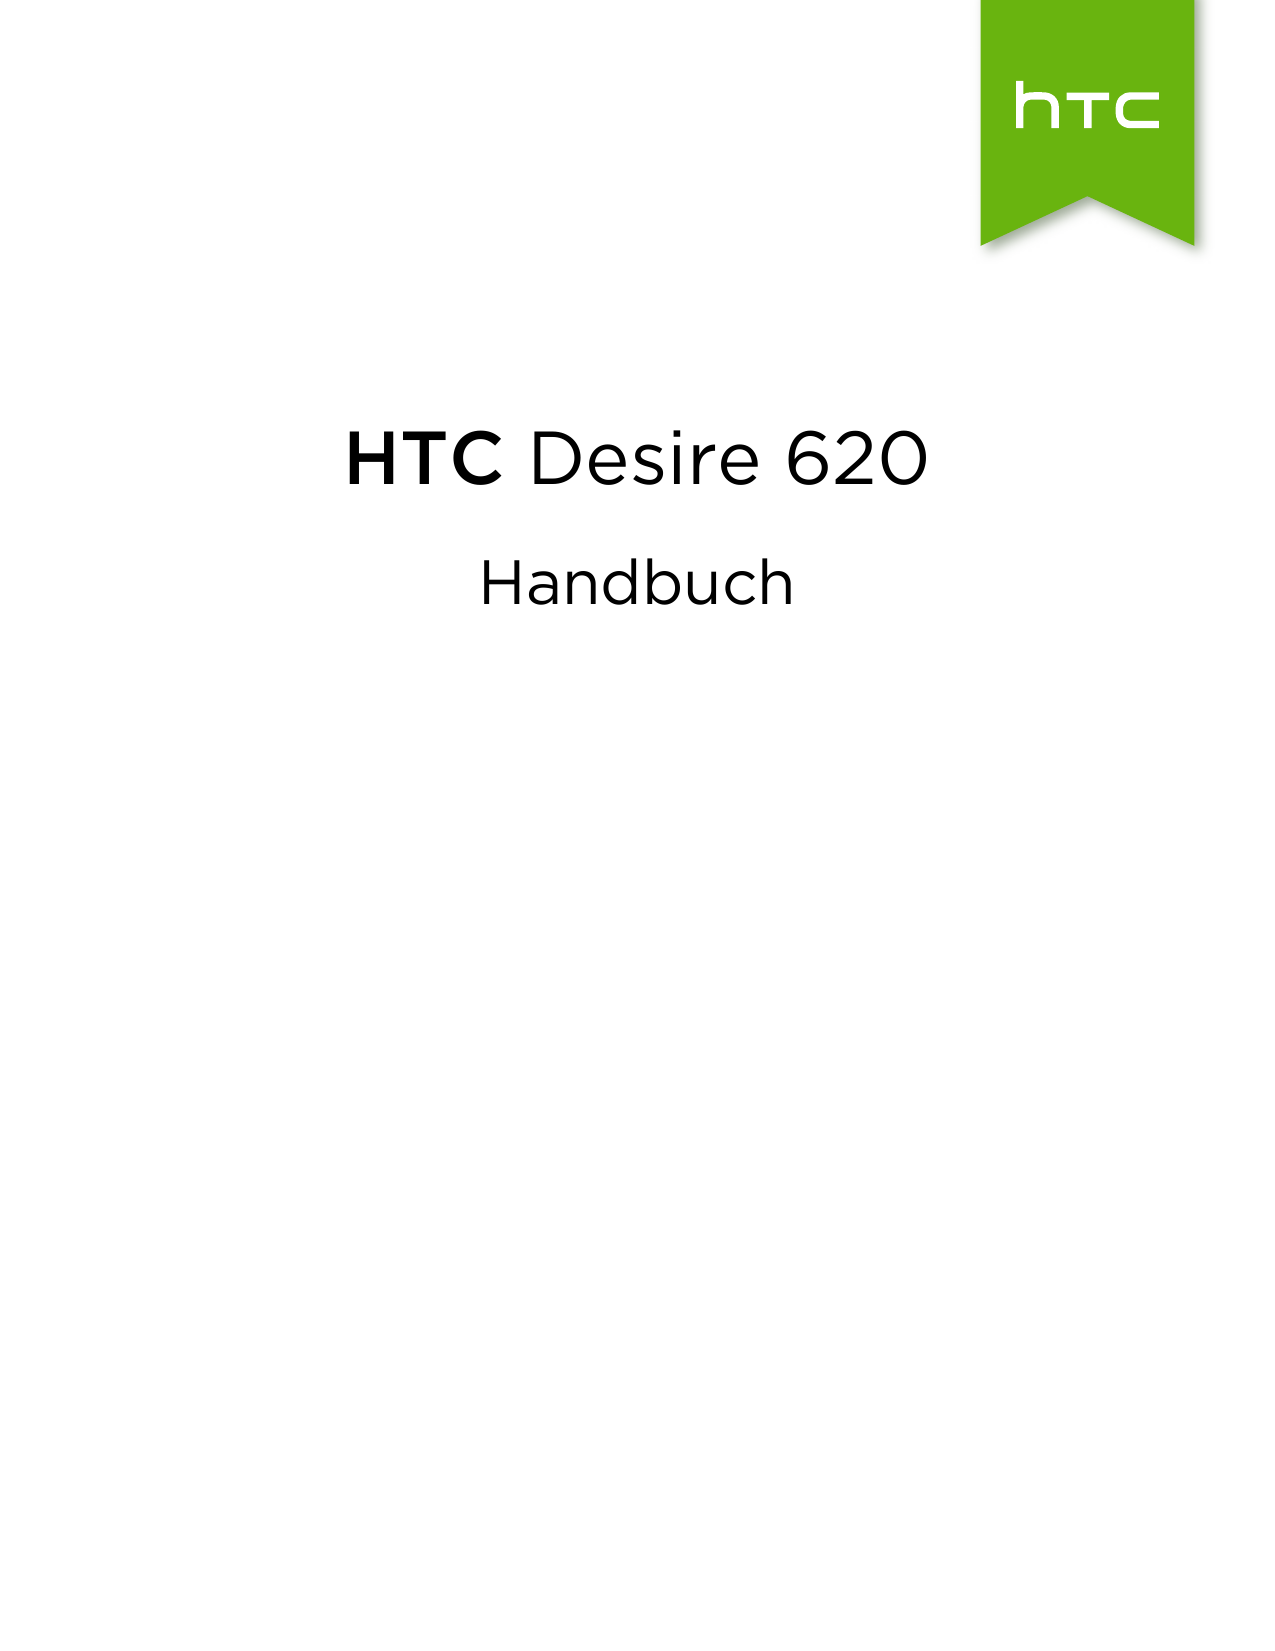 HTC Desire 620Handbuch